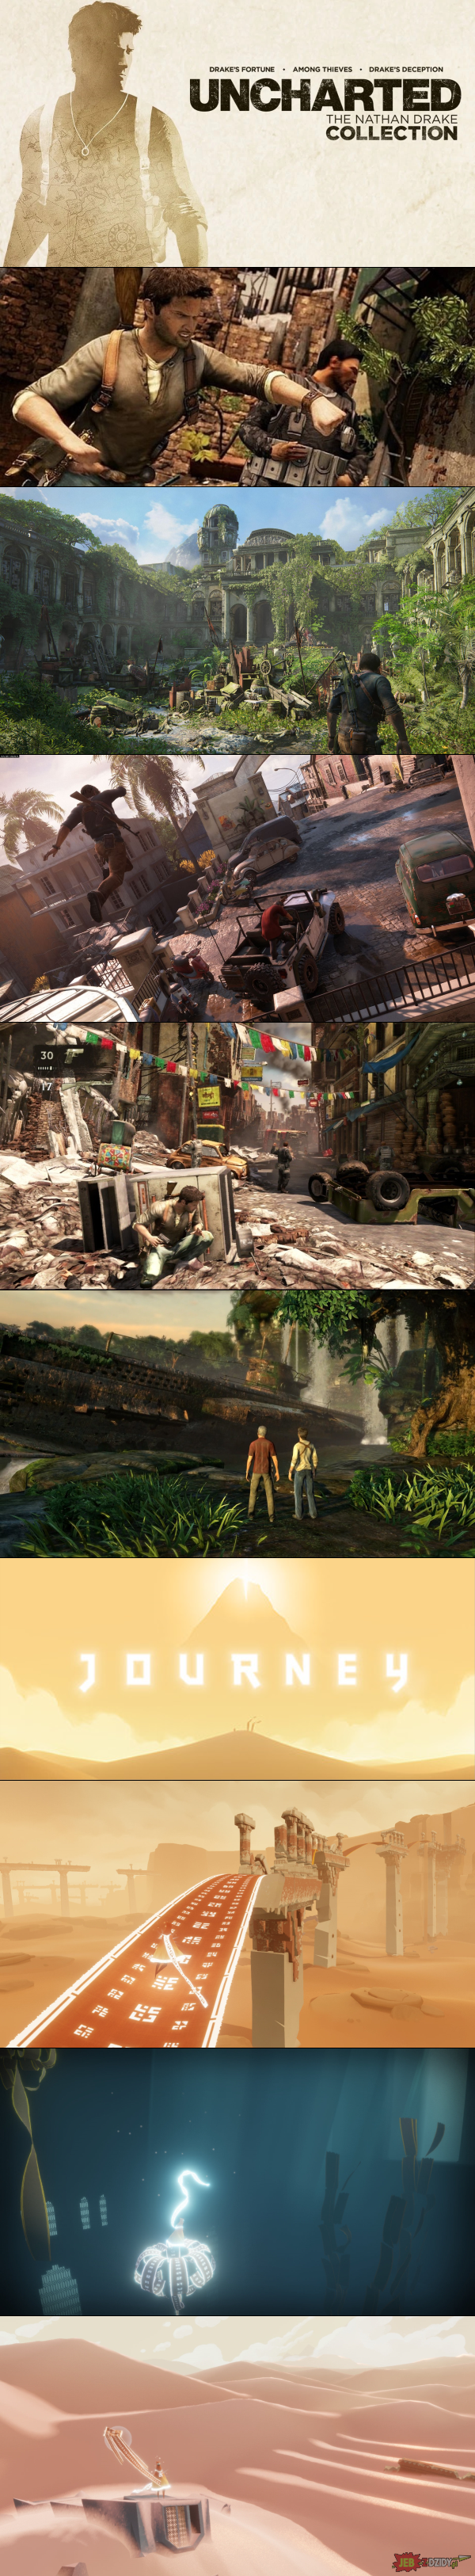 Uncharted: Kolekcja Nathana Drake'a oraz Journey dostępne za darmo na PlayStation 4 w PlayStation Store